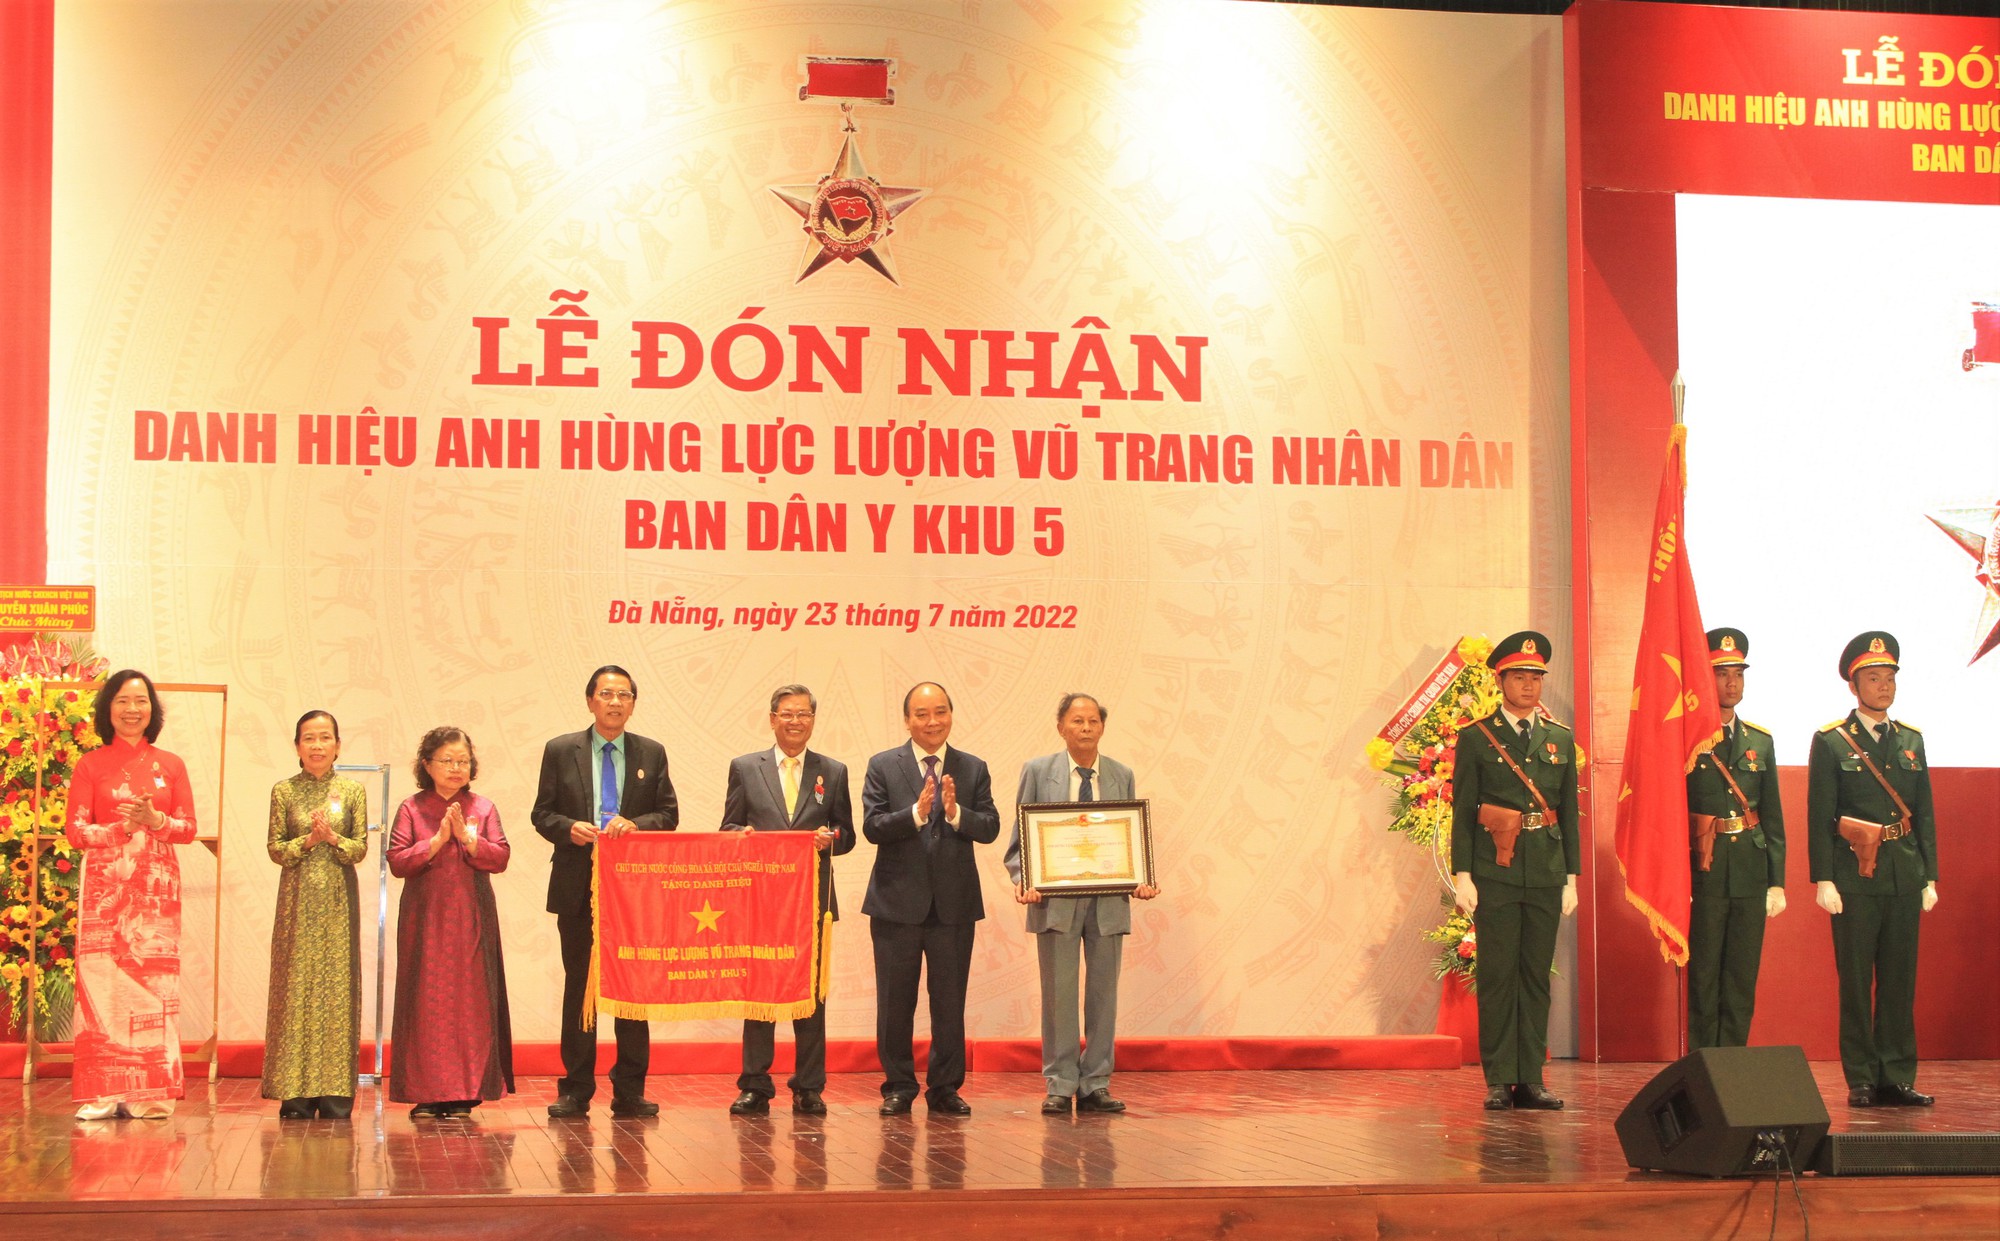 Ban Dân y Khu 5 vinh dự đón nhận danh hiệu Anh hùng Lực lượng vũ trang Nhân dân - Ảnh 2.